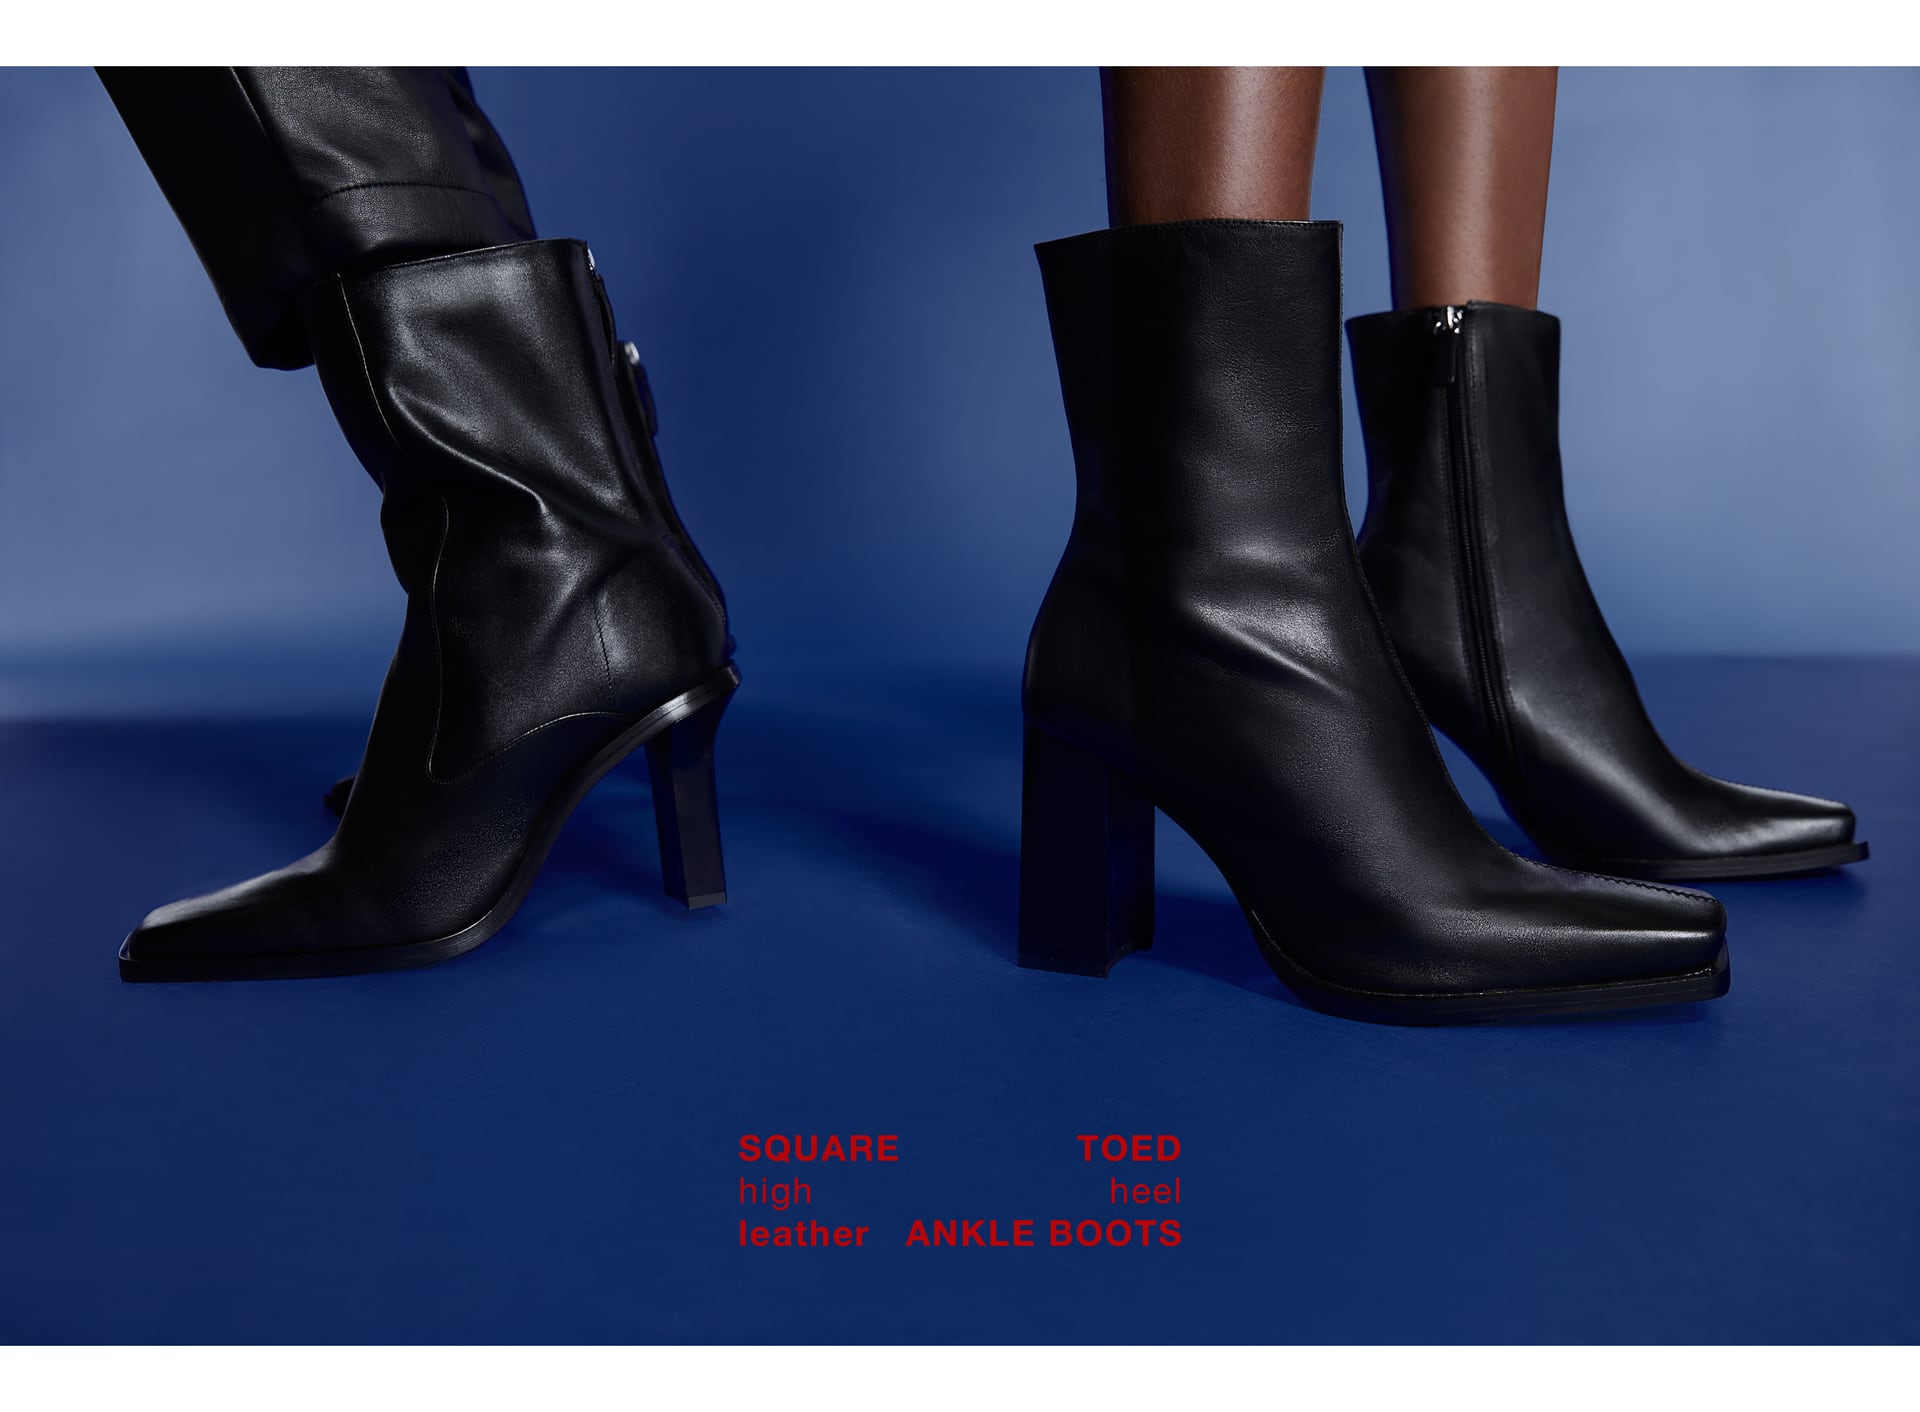 Regeneración cheque Cooperativa Botines de mujer Zara 2019, las tendencias del otoño en calzado. Cowboy,  camperos y metalizados - Modalia.es